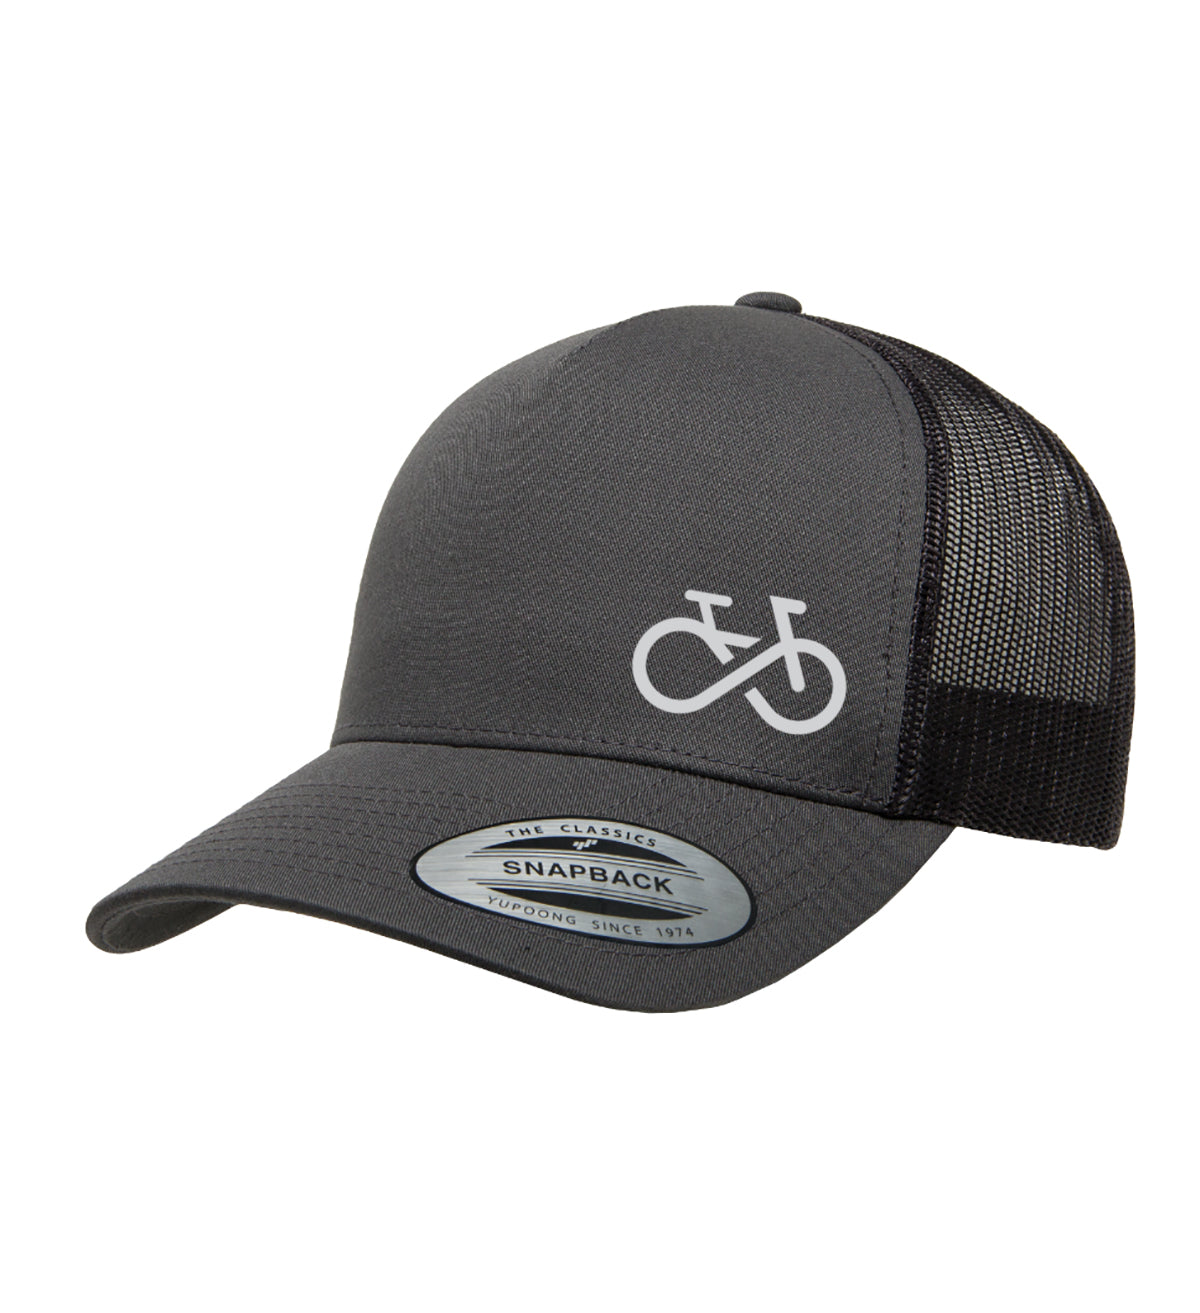 bike trucker hat